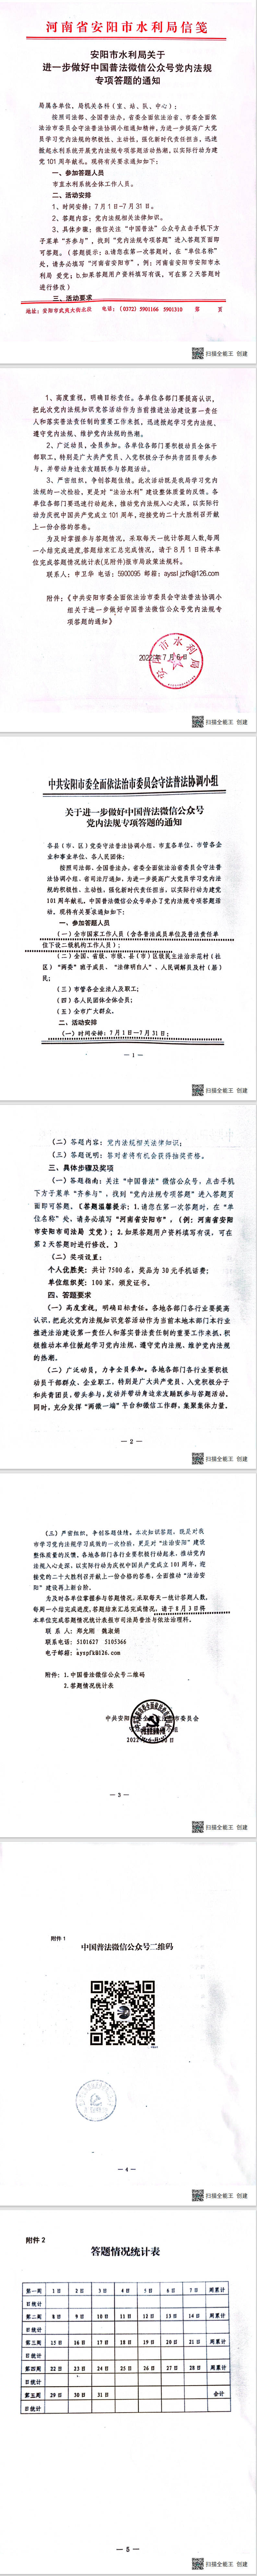 安阳市水利局关于进一步做好中国普法微信公众号党内法规专项答题的通知.jpg